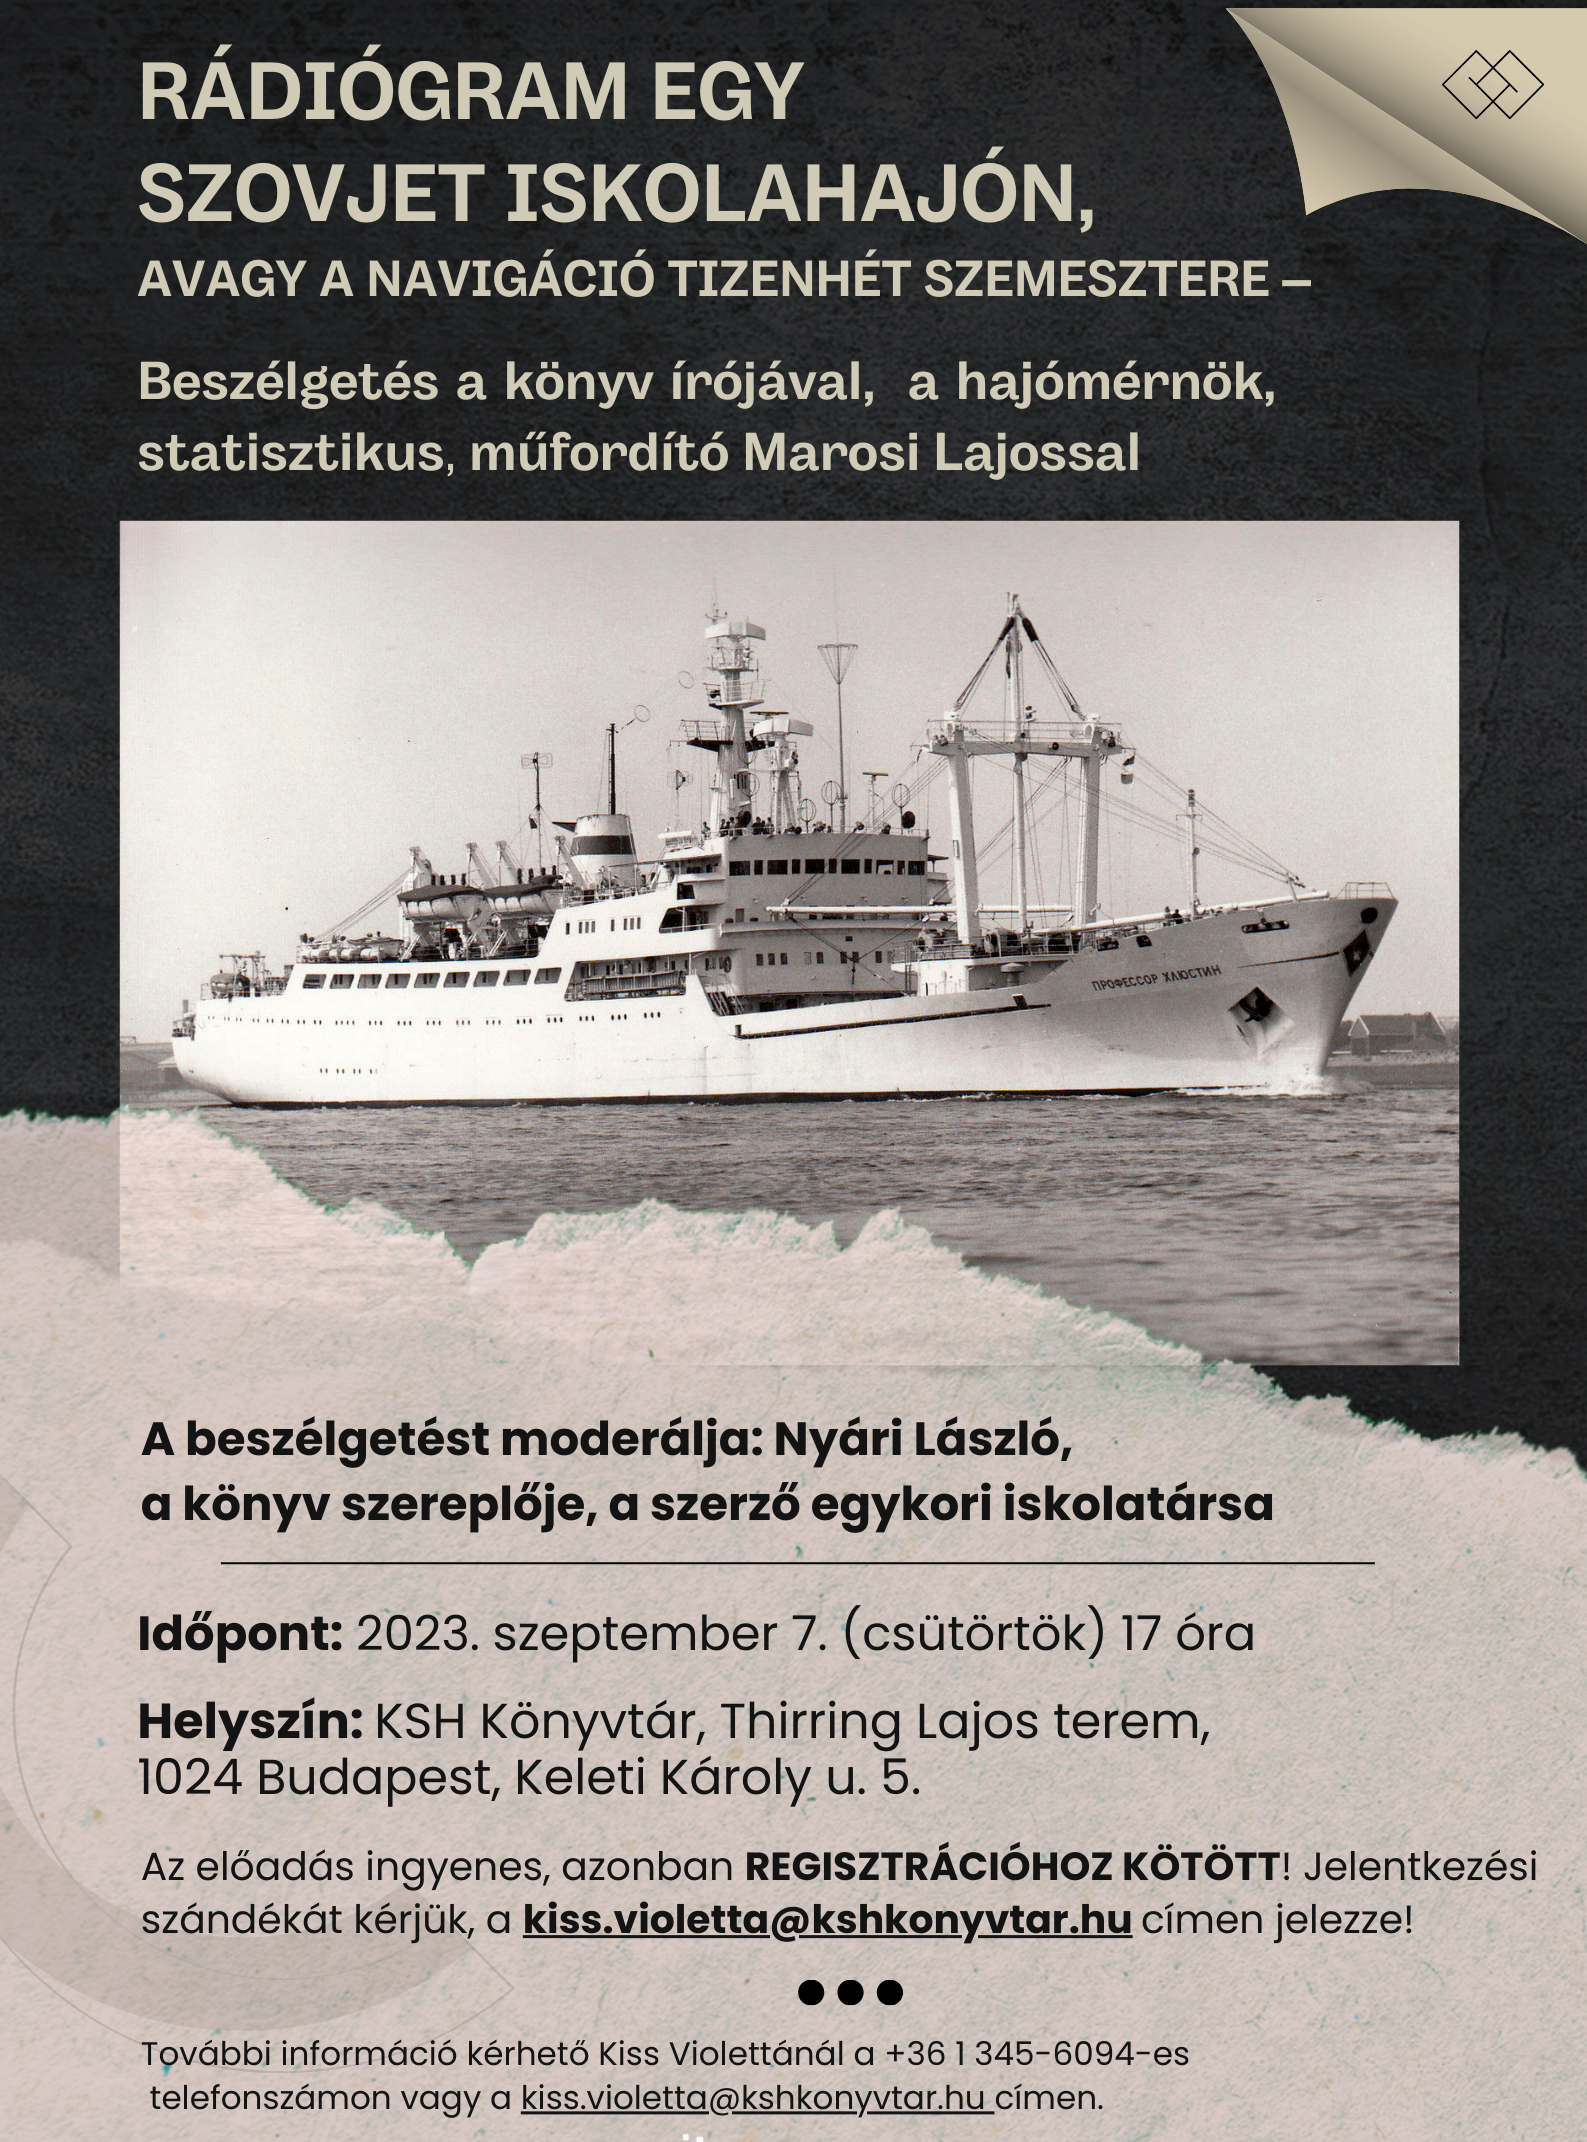 Rádiógram egy szovjet iskolahajón, avagy a navigáció tizenhét szemesztere – beszélgetés Marosi Lajossal